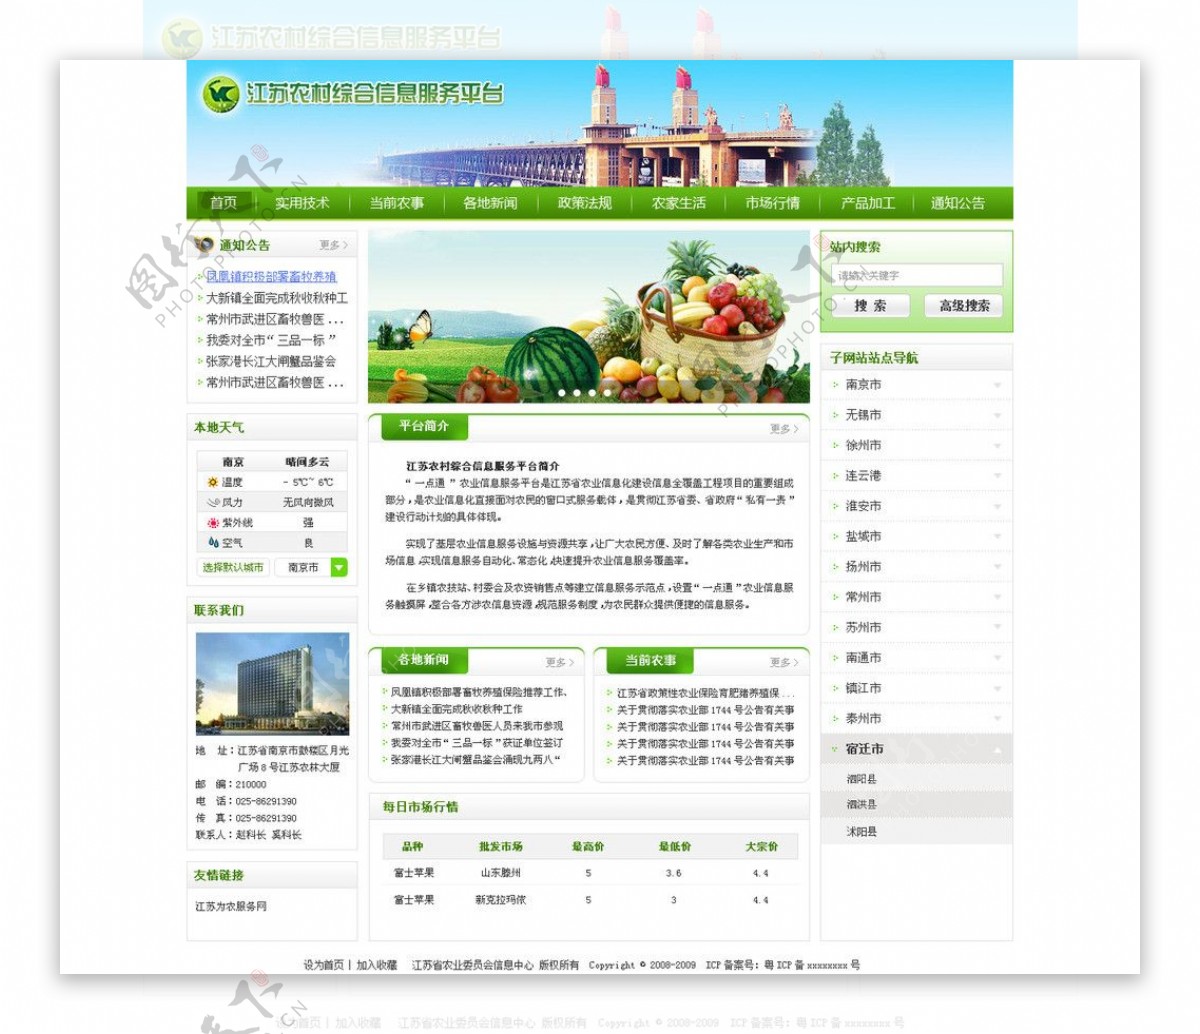 江苏农村综合信息服务图片